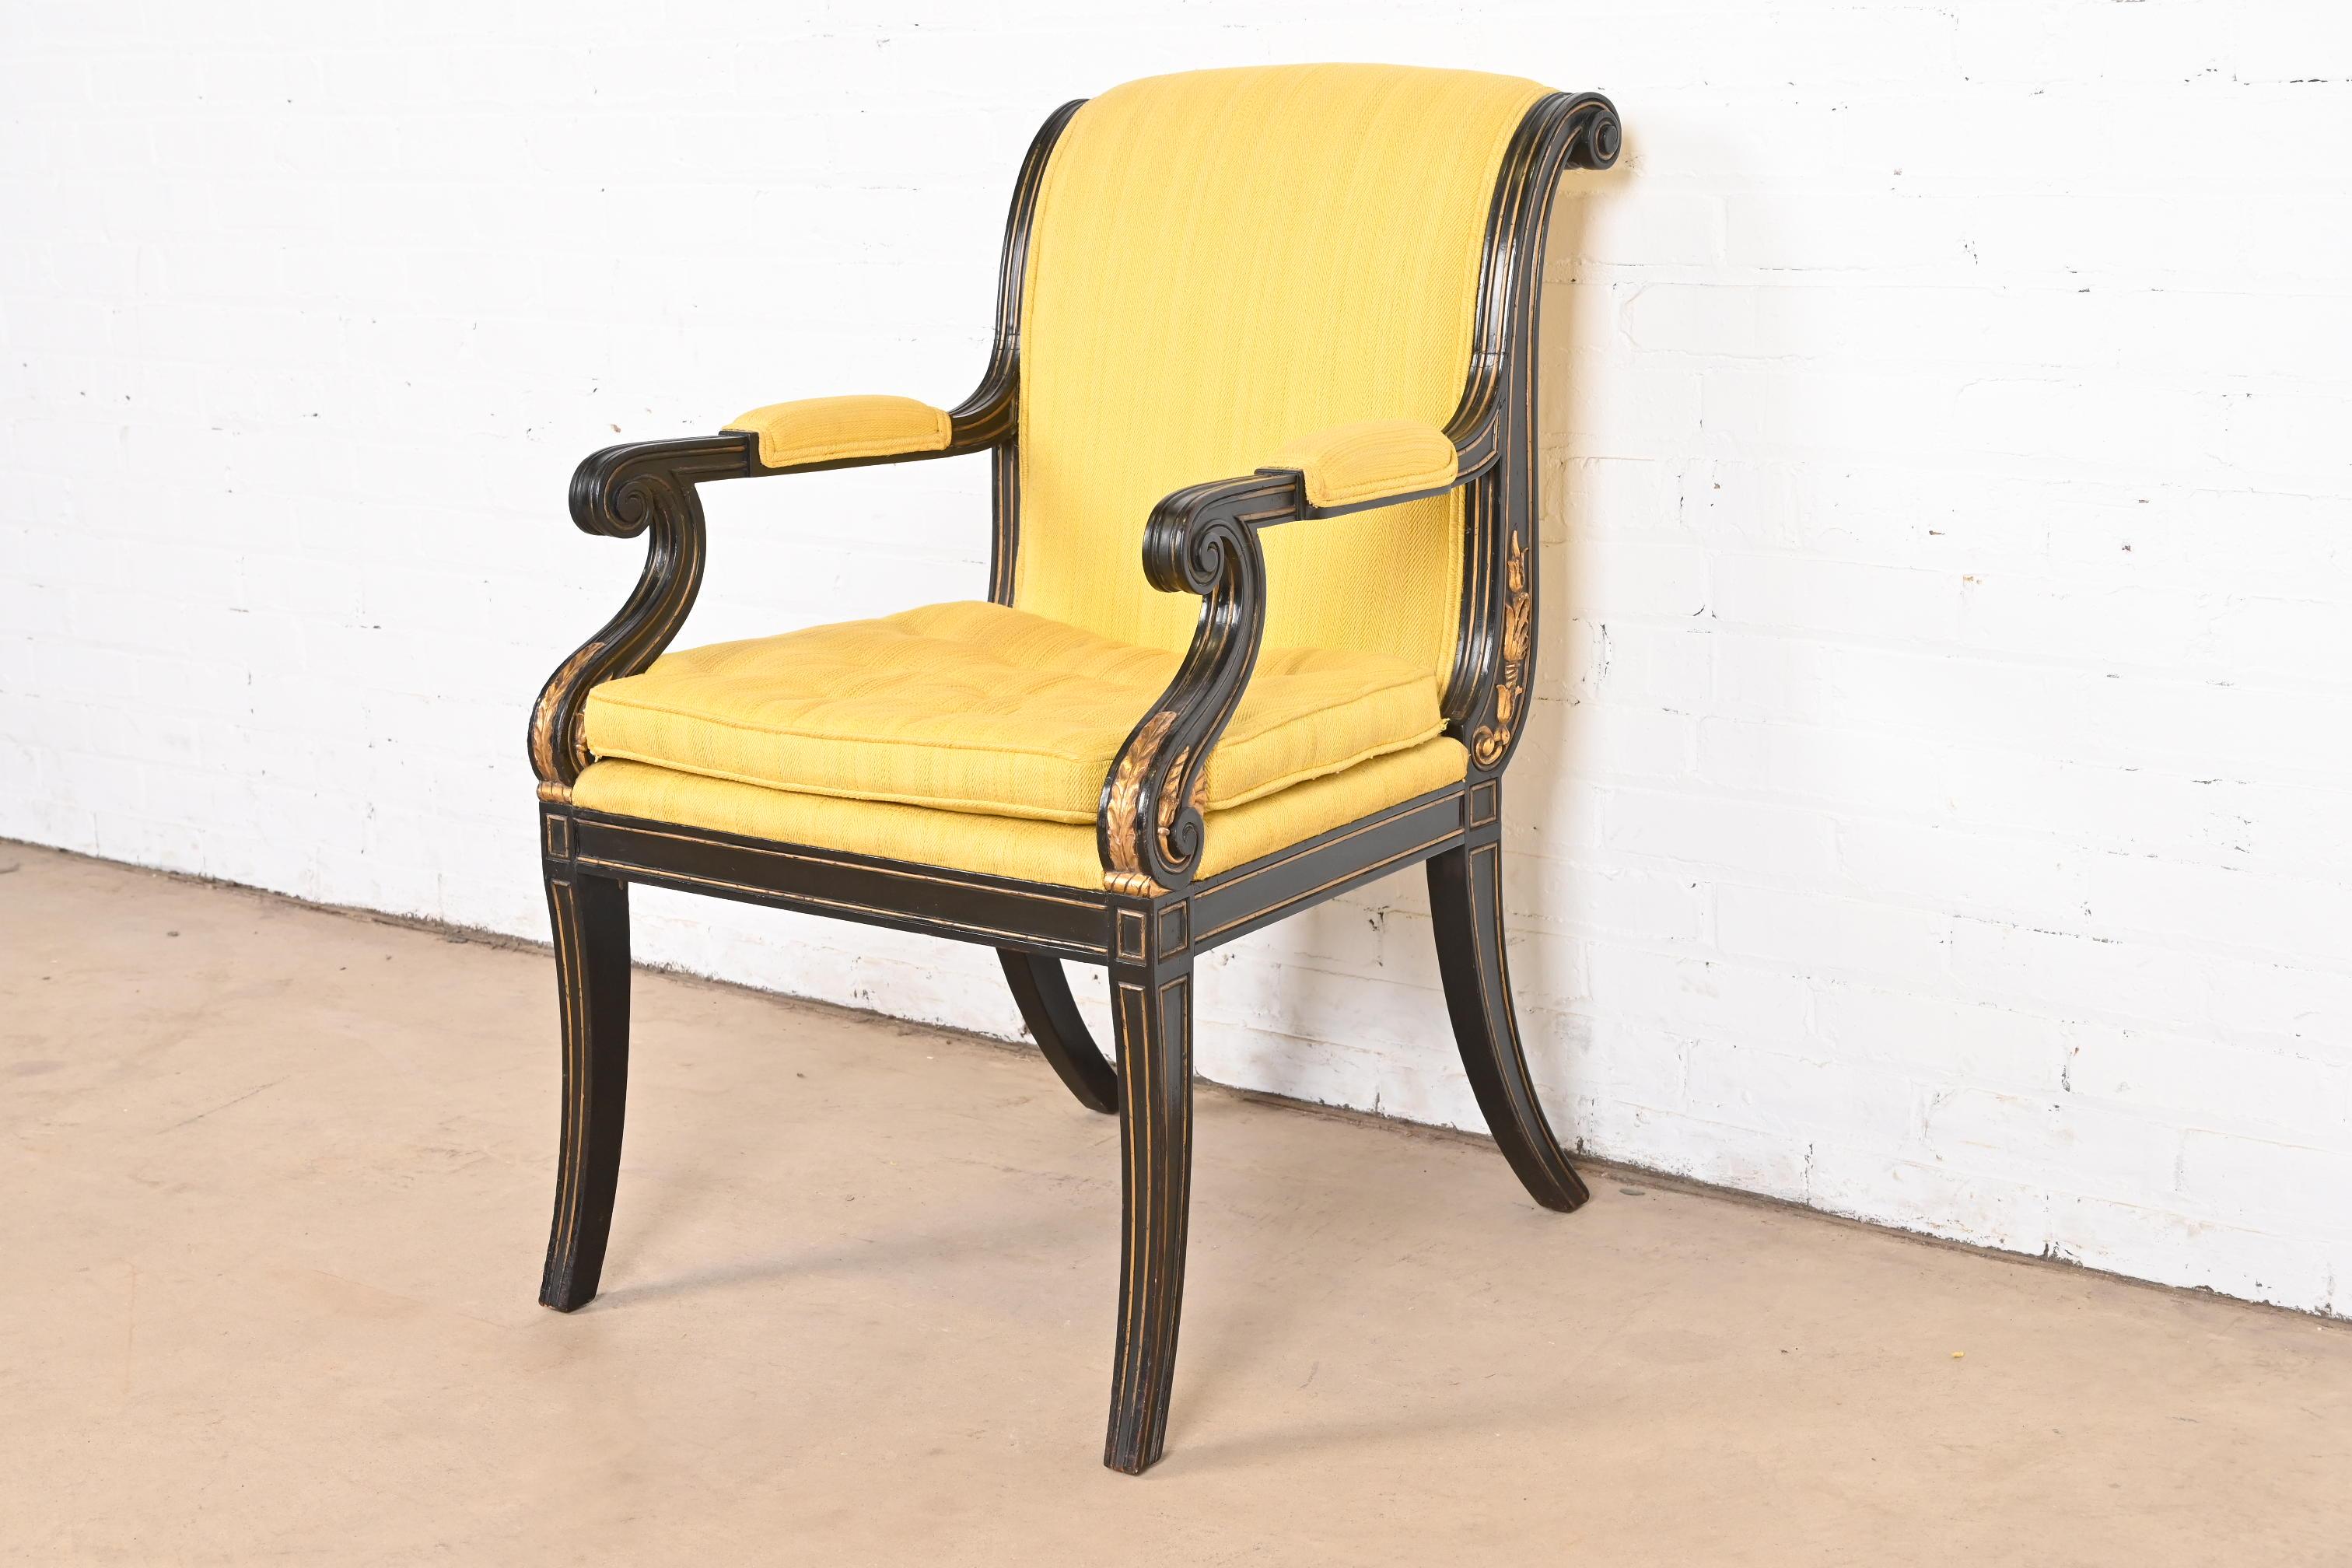 Ein schöner Sessel im Regency- oder neoklassizistischen Stil

Nach dem Vorbild von Baker Furniture

USA, ca. 1960er Jahre

Ebonisierter und vergoldeter Rahmen aus geschnitztem Nussbaumholz, mit gelber Polsterung.

Maße: 23 